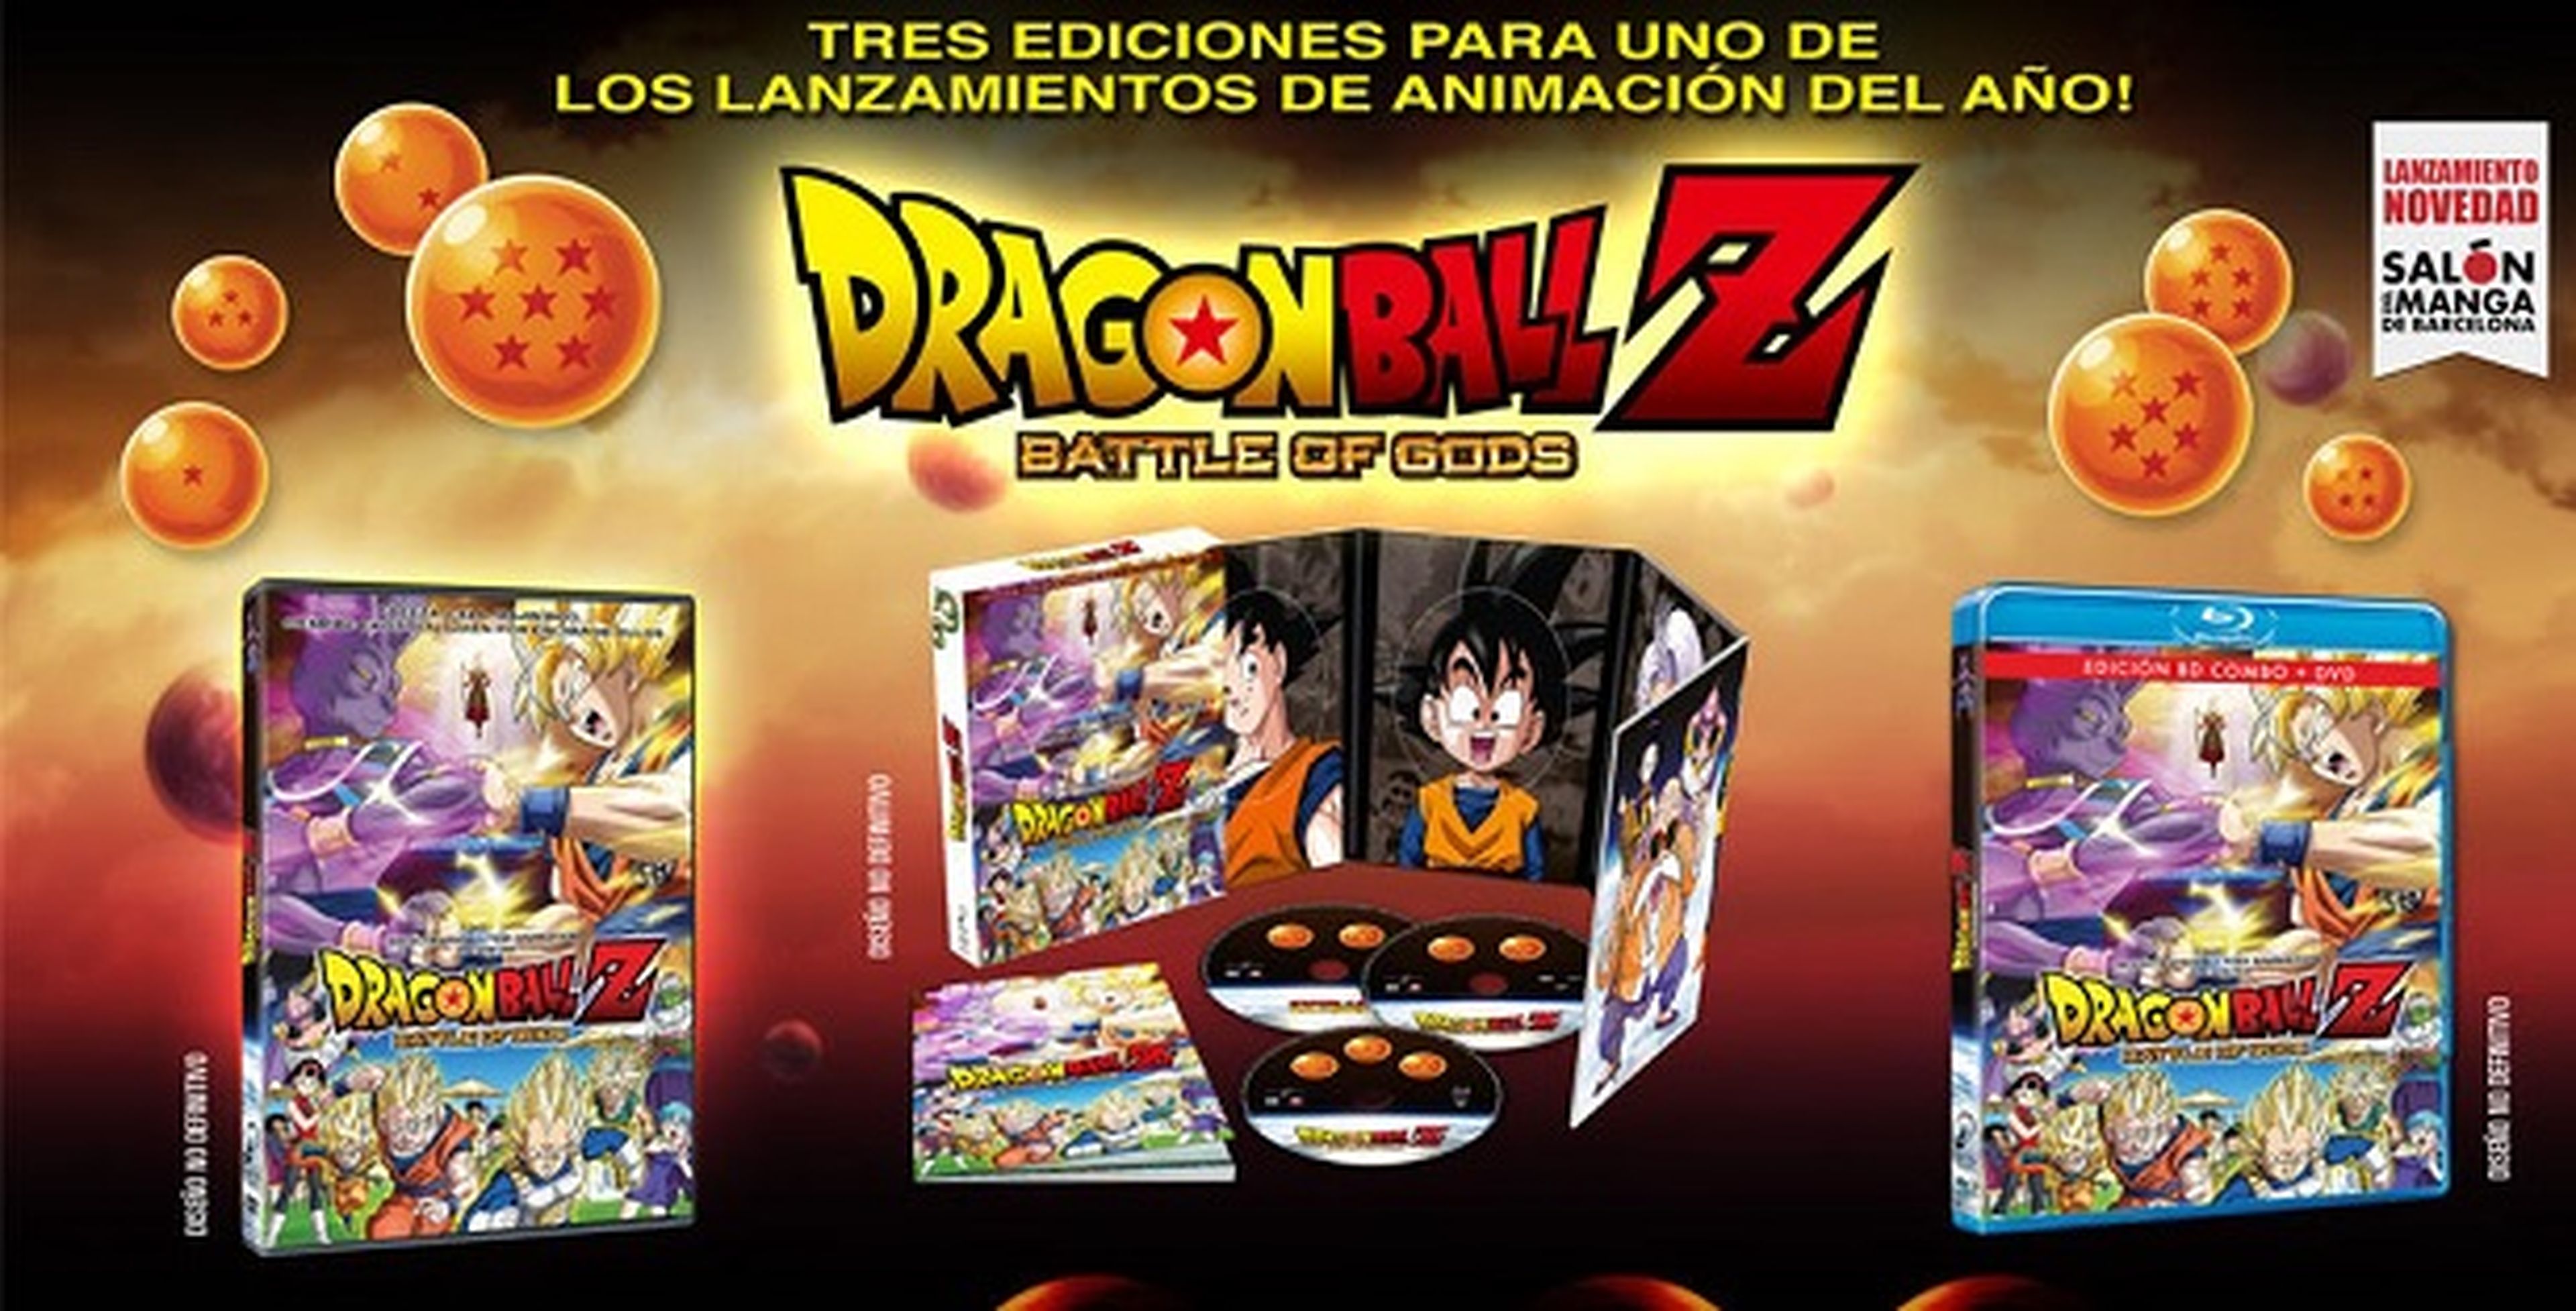 Precio de los DVD y Blu-Ray de Dragon Ball Z: Battle of Gods